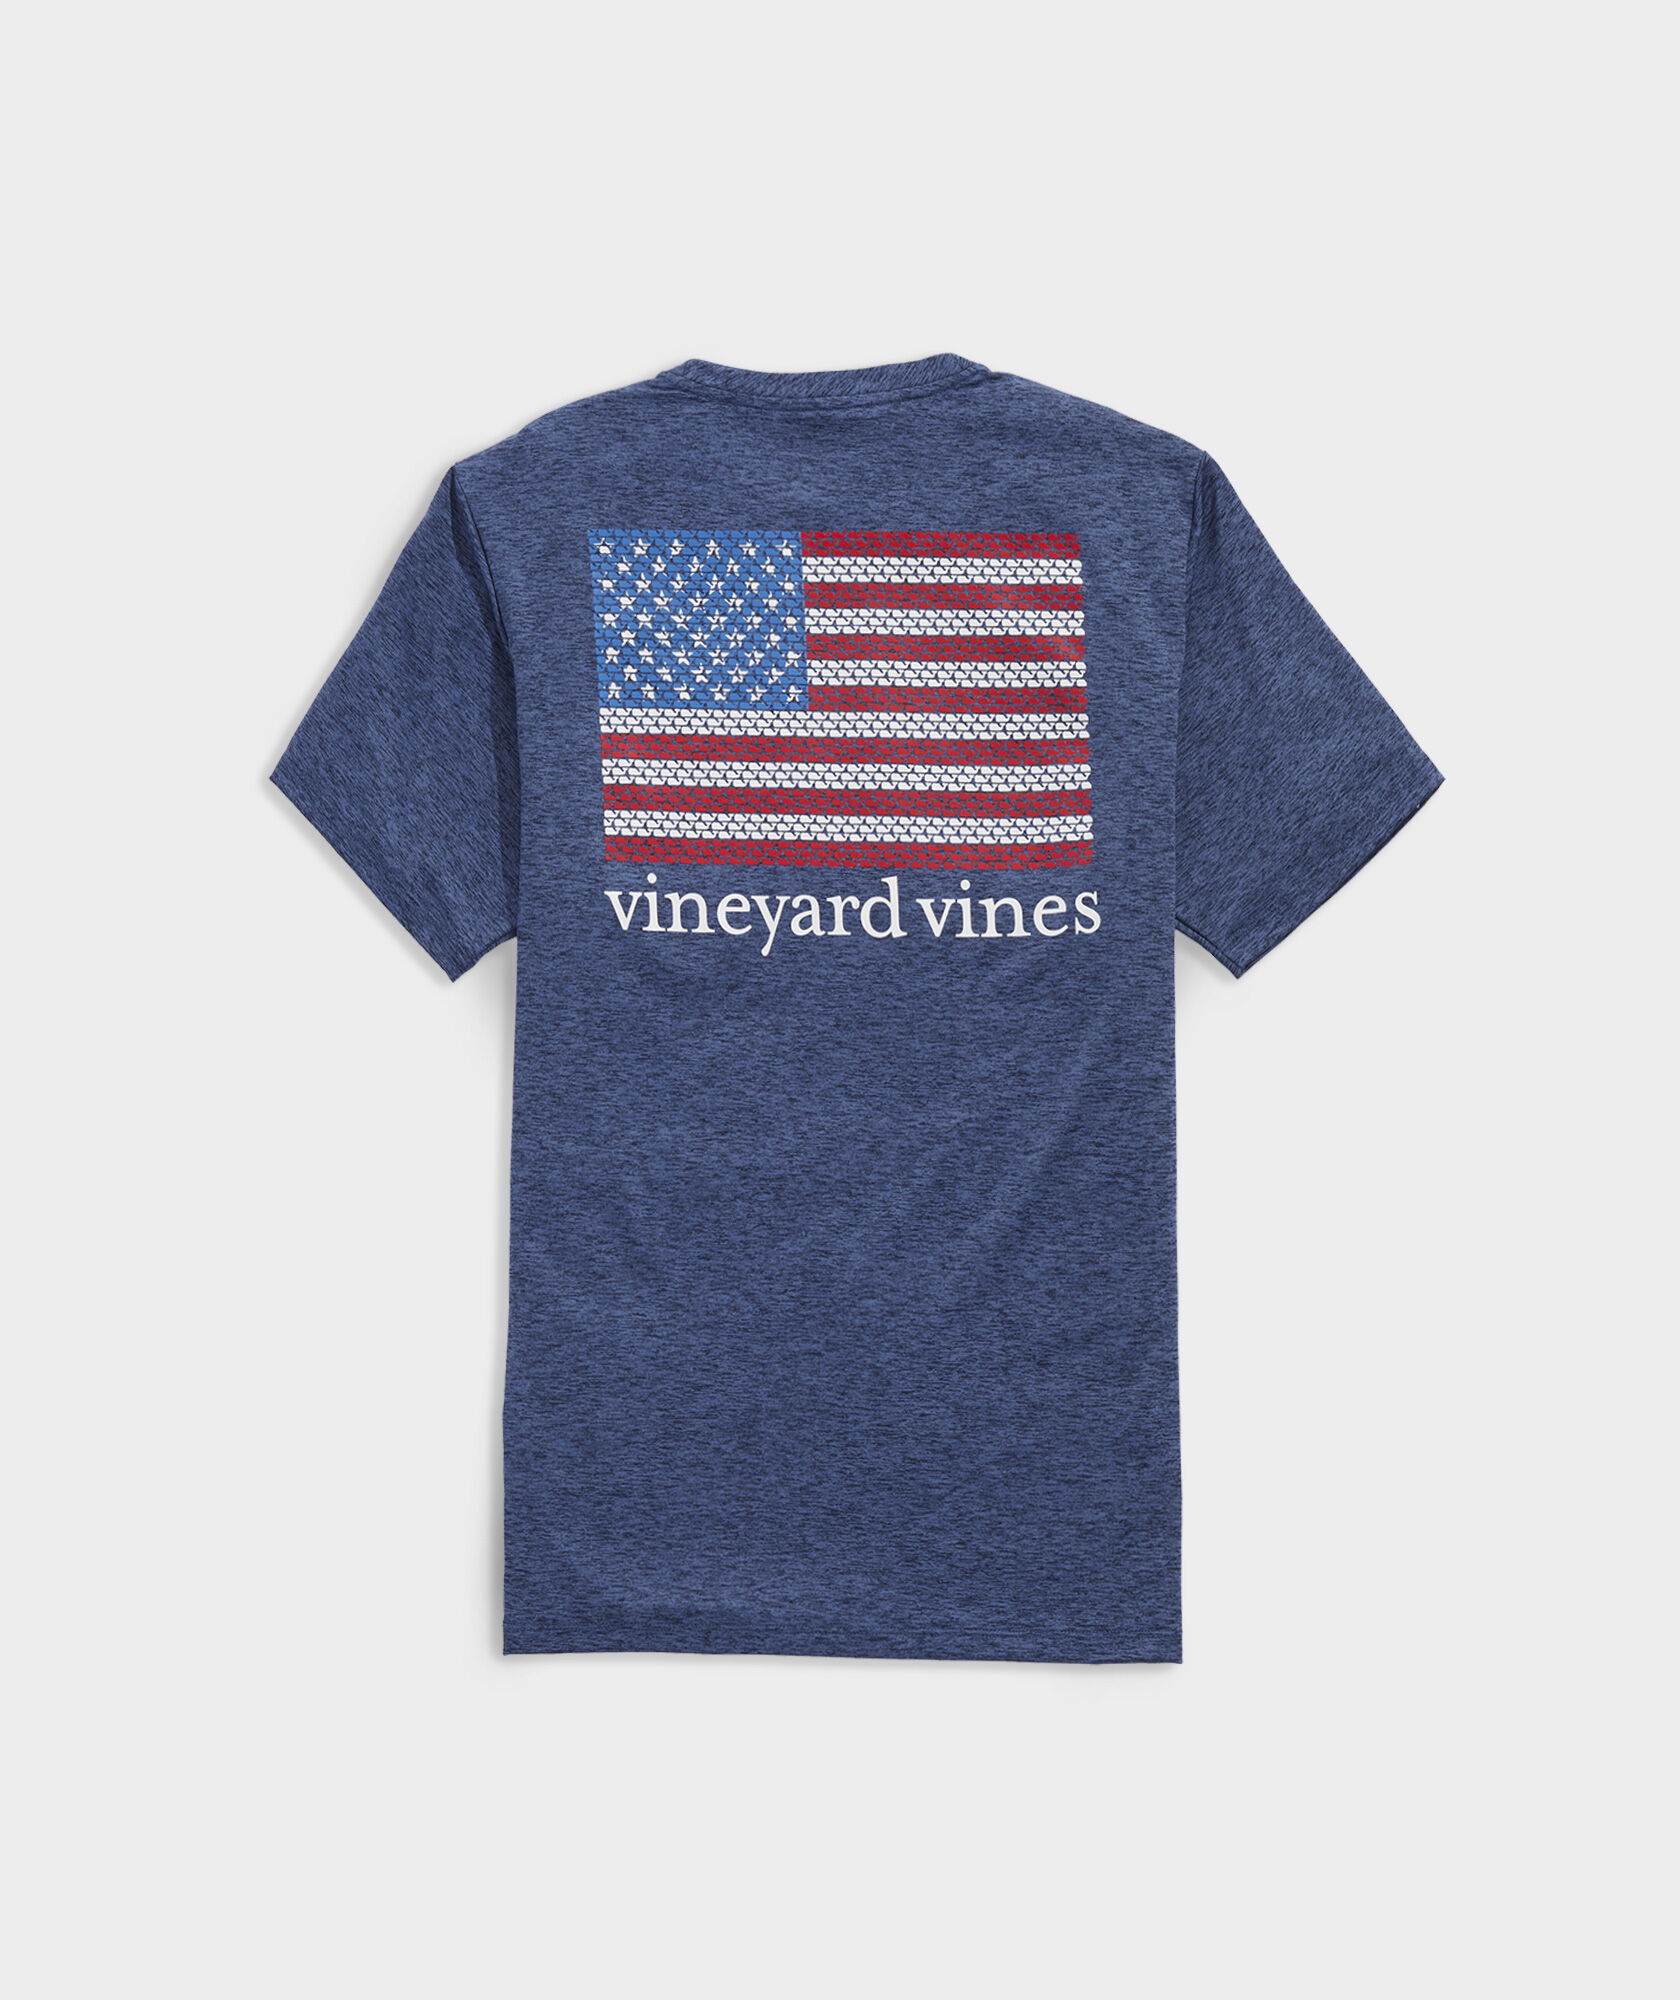 Shop Mariners Way Harbor Shirt at vineyard vines